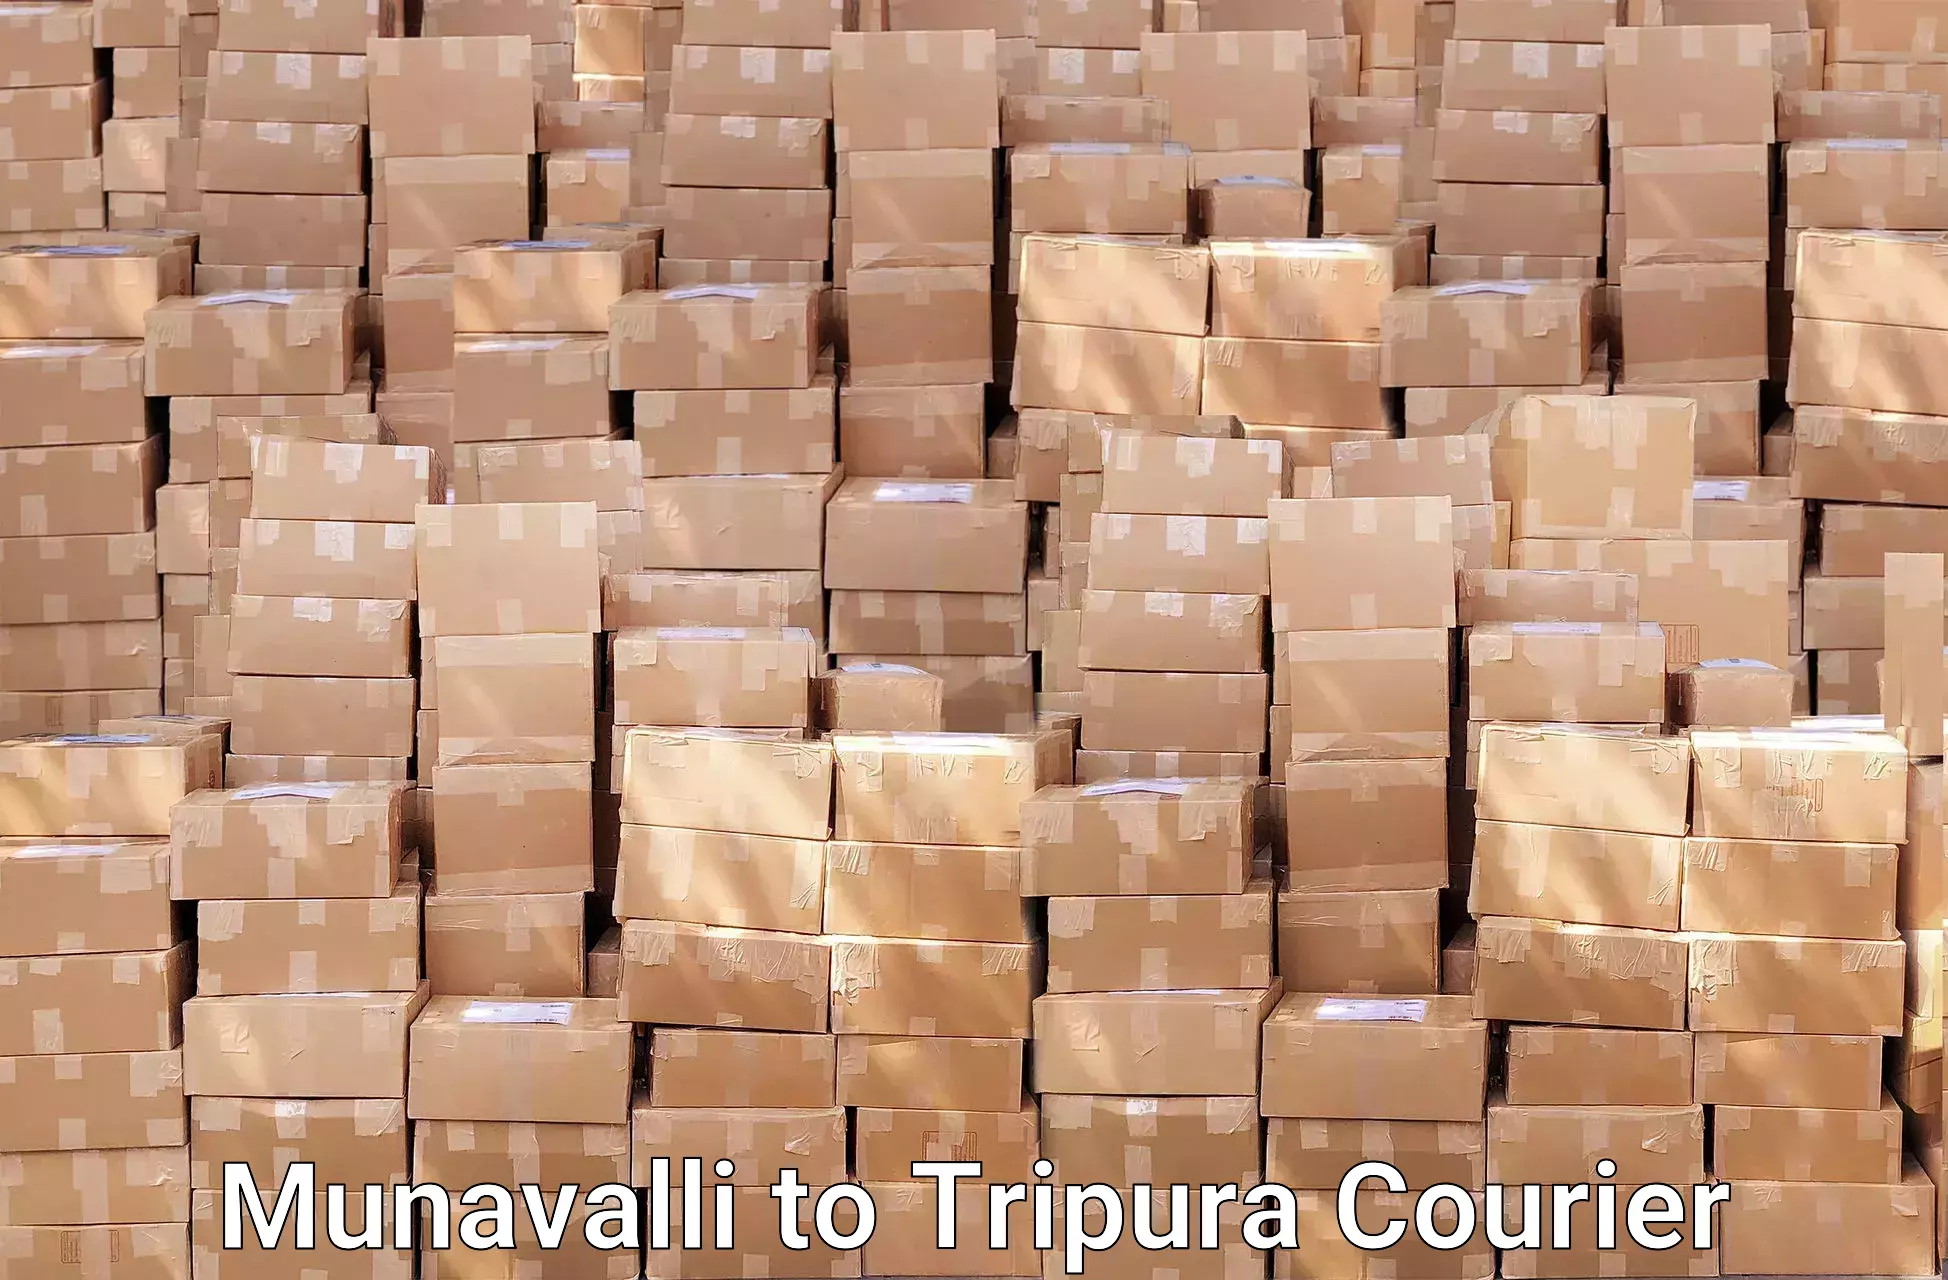 Furniture moving experts Munavalli to Tripura